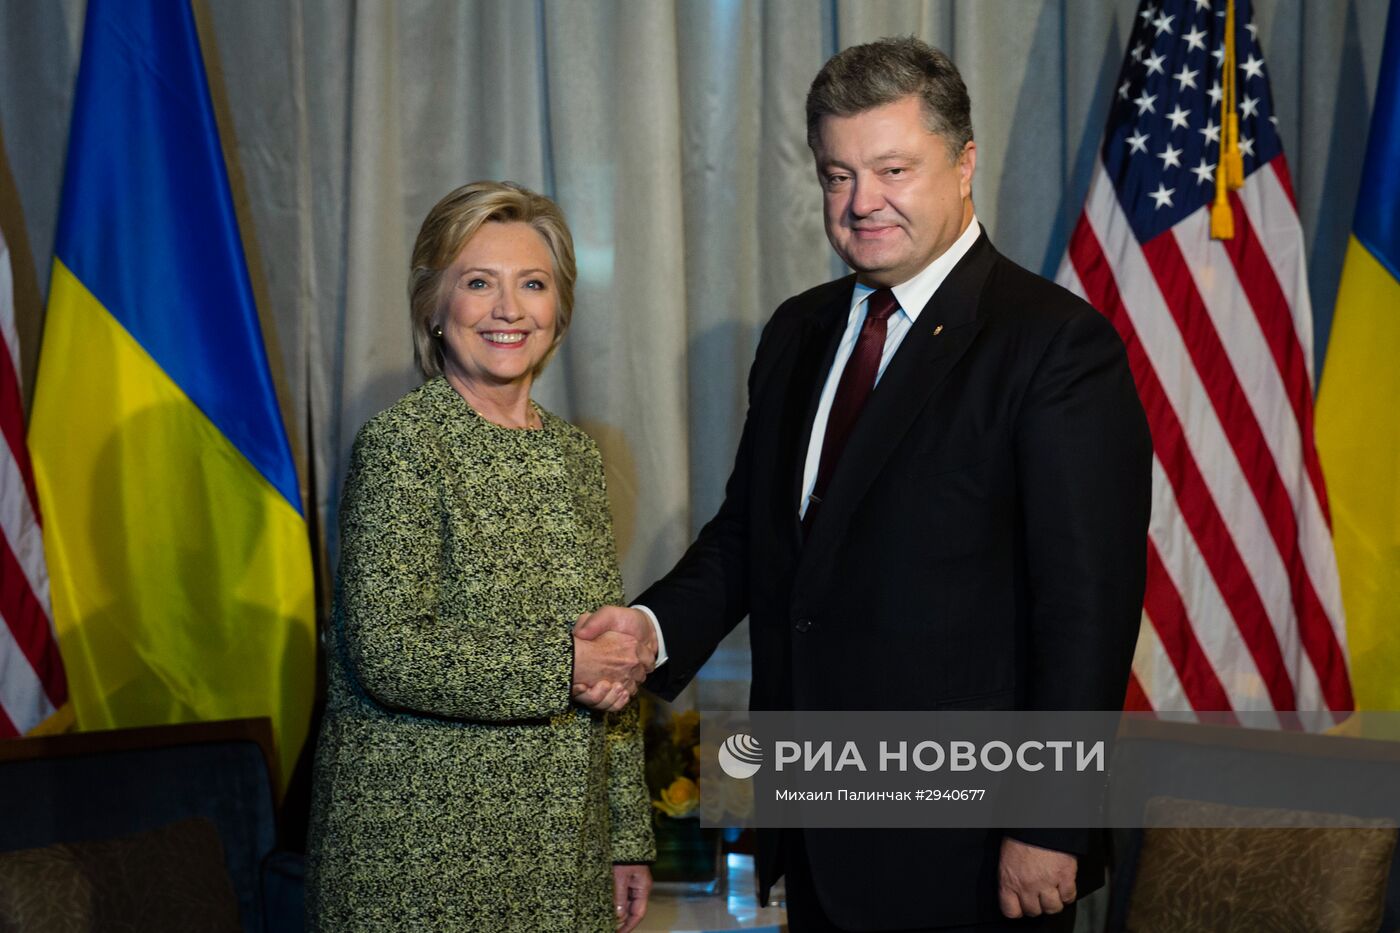 Встреча президента Украины П. Порошенко с Х. Клинтон